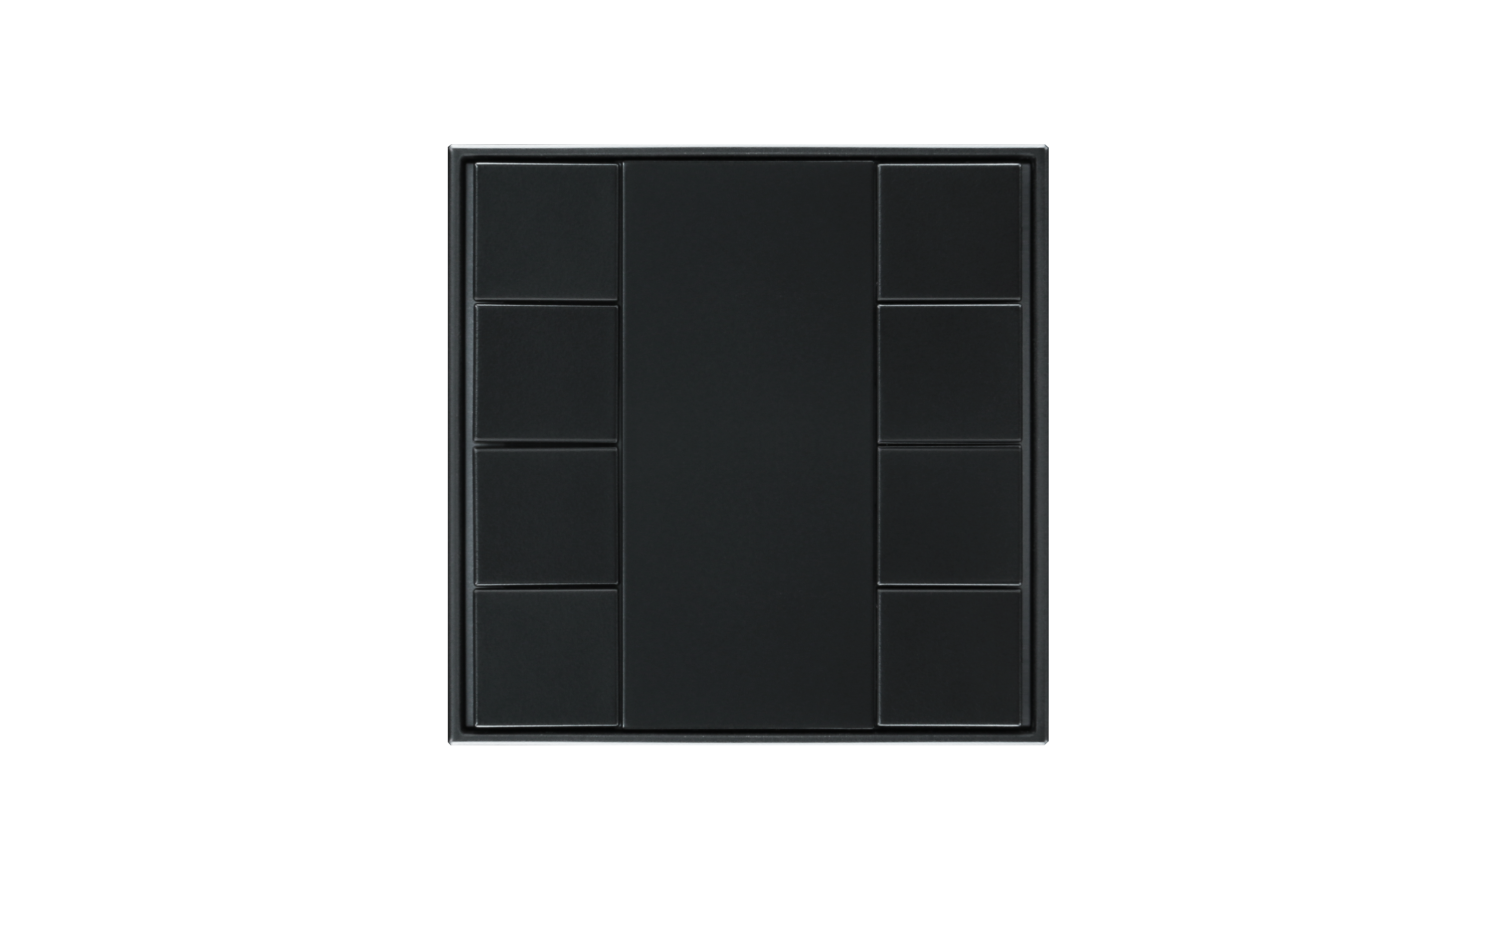 Model B DALI-2 Switch - 8 Button Black Plastic